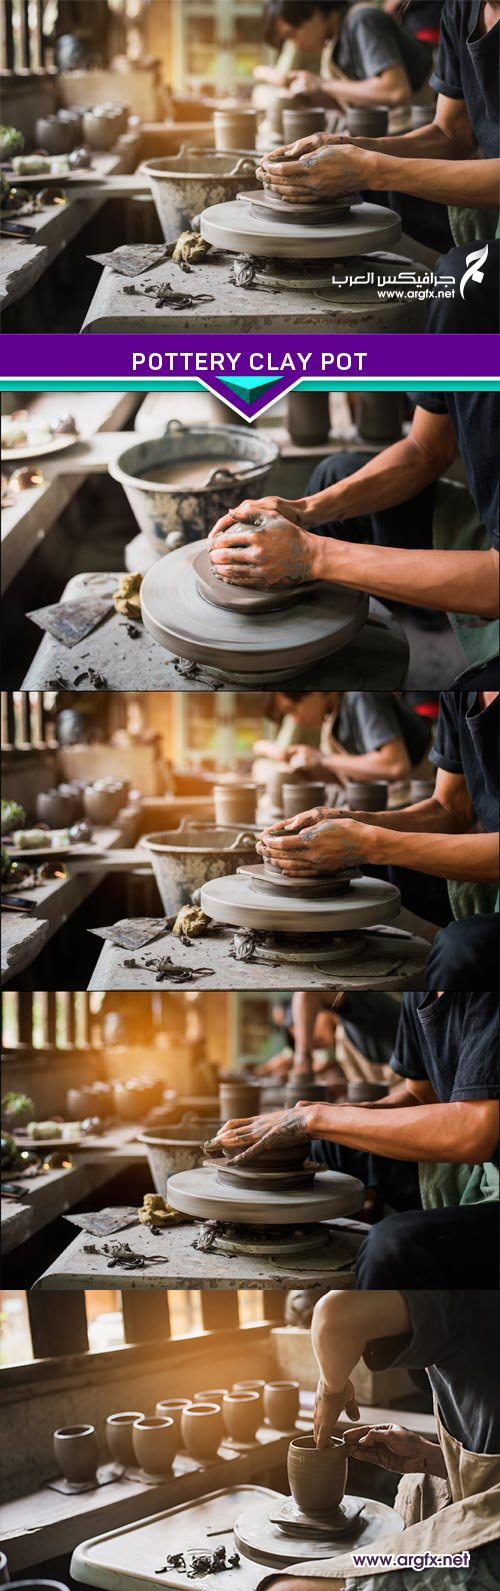  Pottery clay pot 4X JPEG